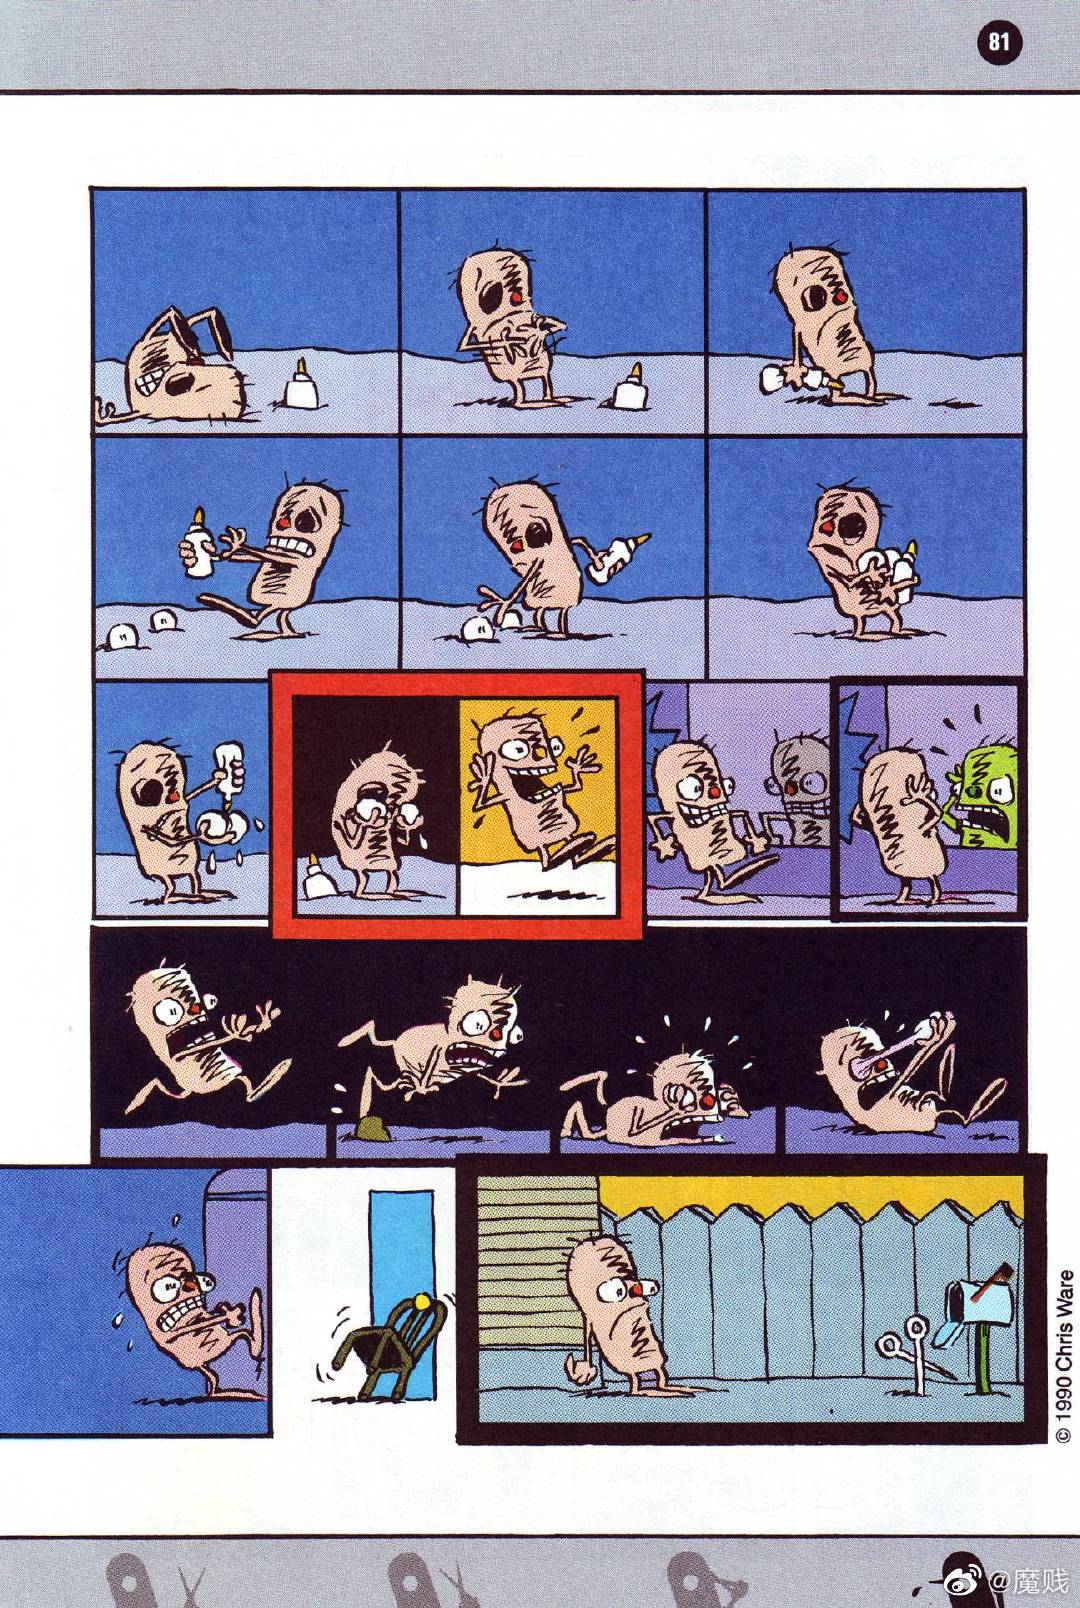 1990年克里斯 韦尔在漫画杂志 Raw 上发表的作品